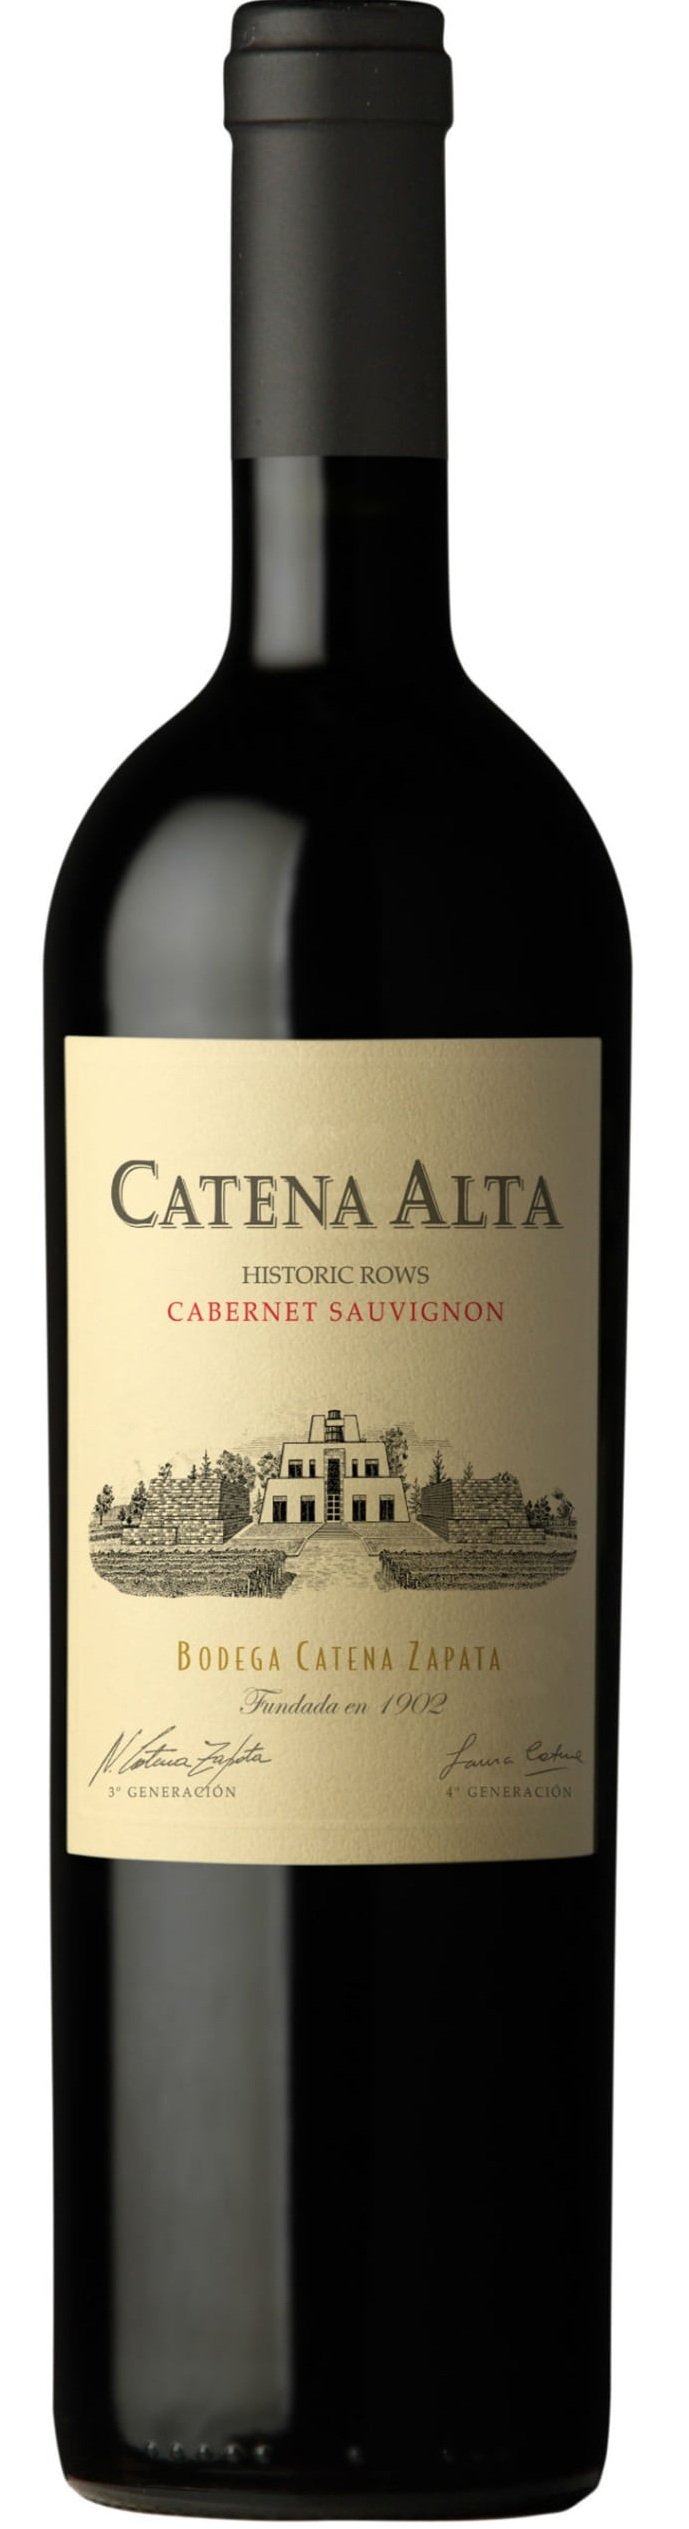 Catena Alta Cabernet Sauvignon Historic Rows 2015